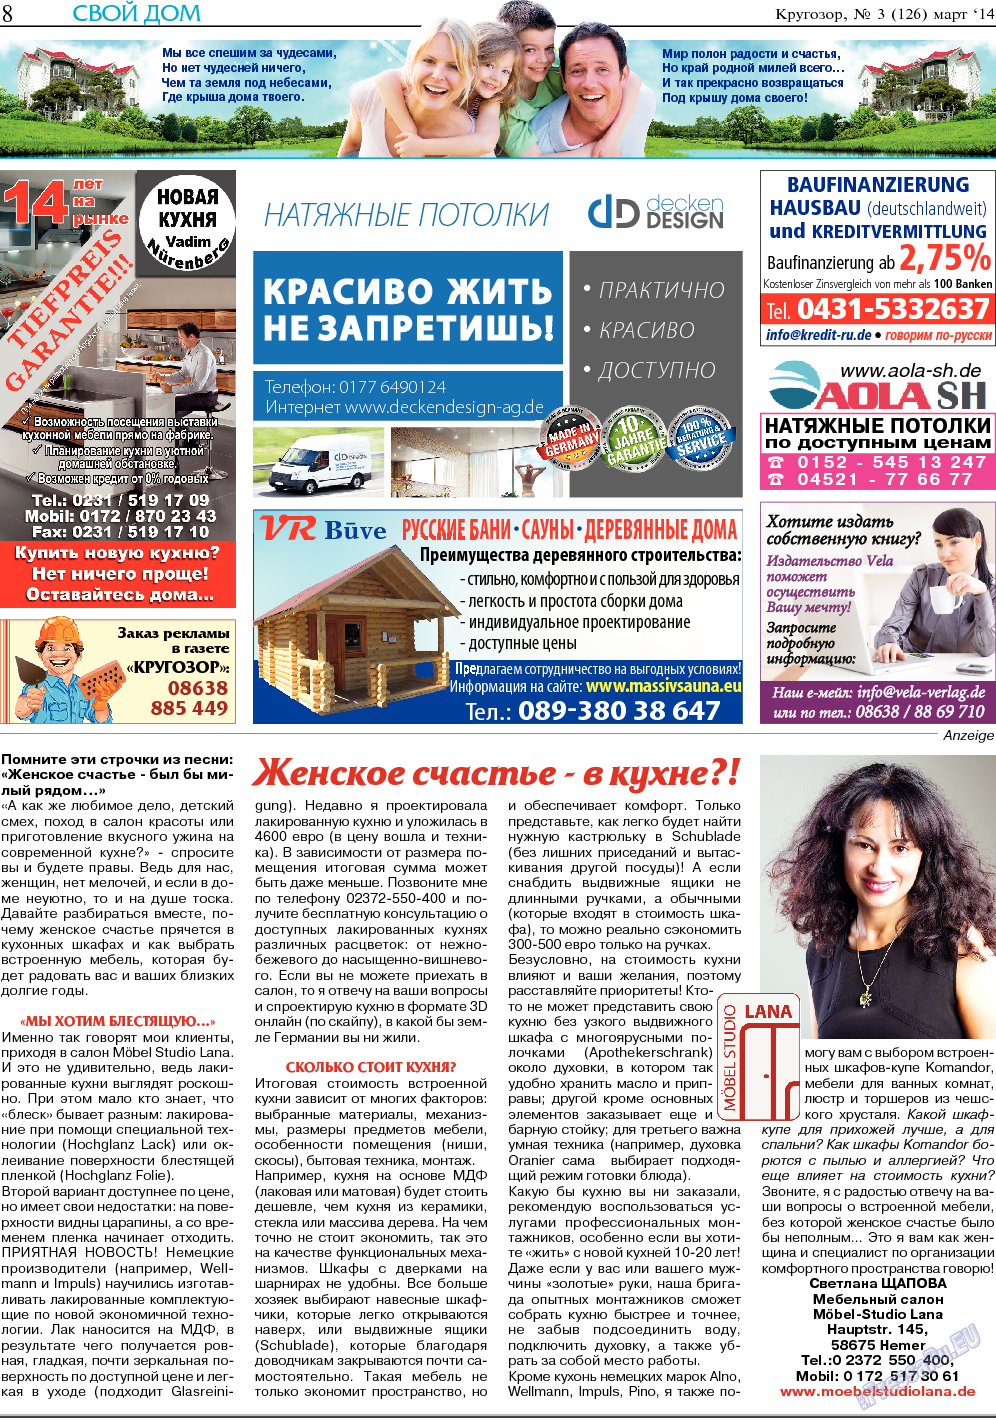 Кругозор, газета. 2014 №3 стр.8